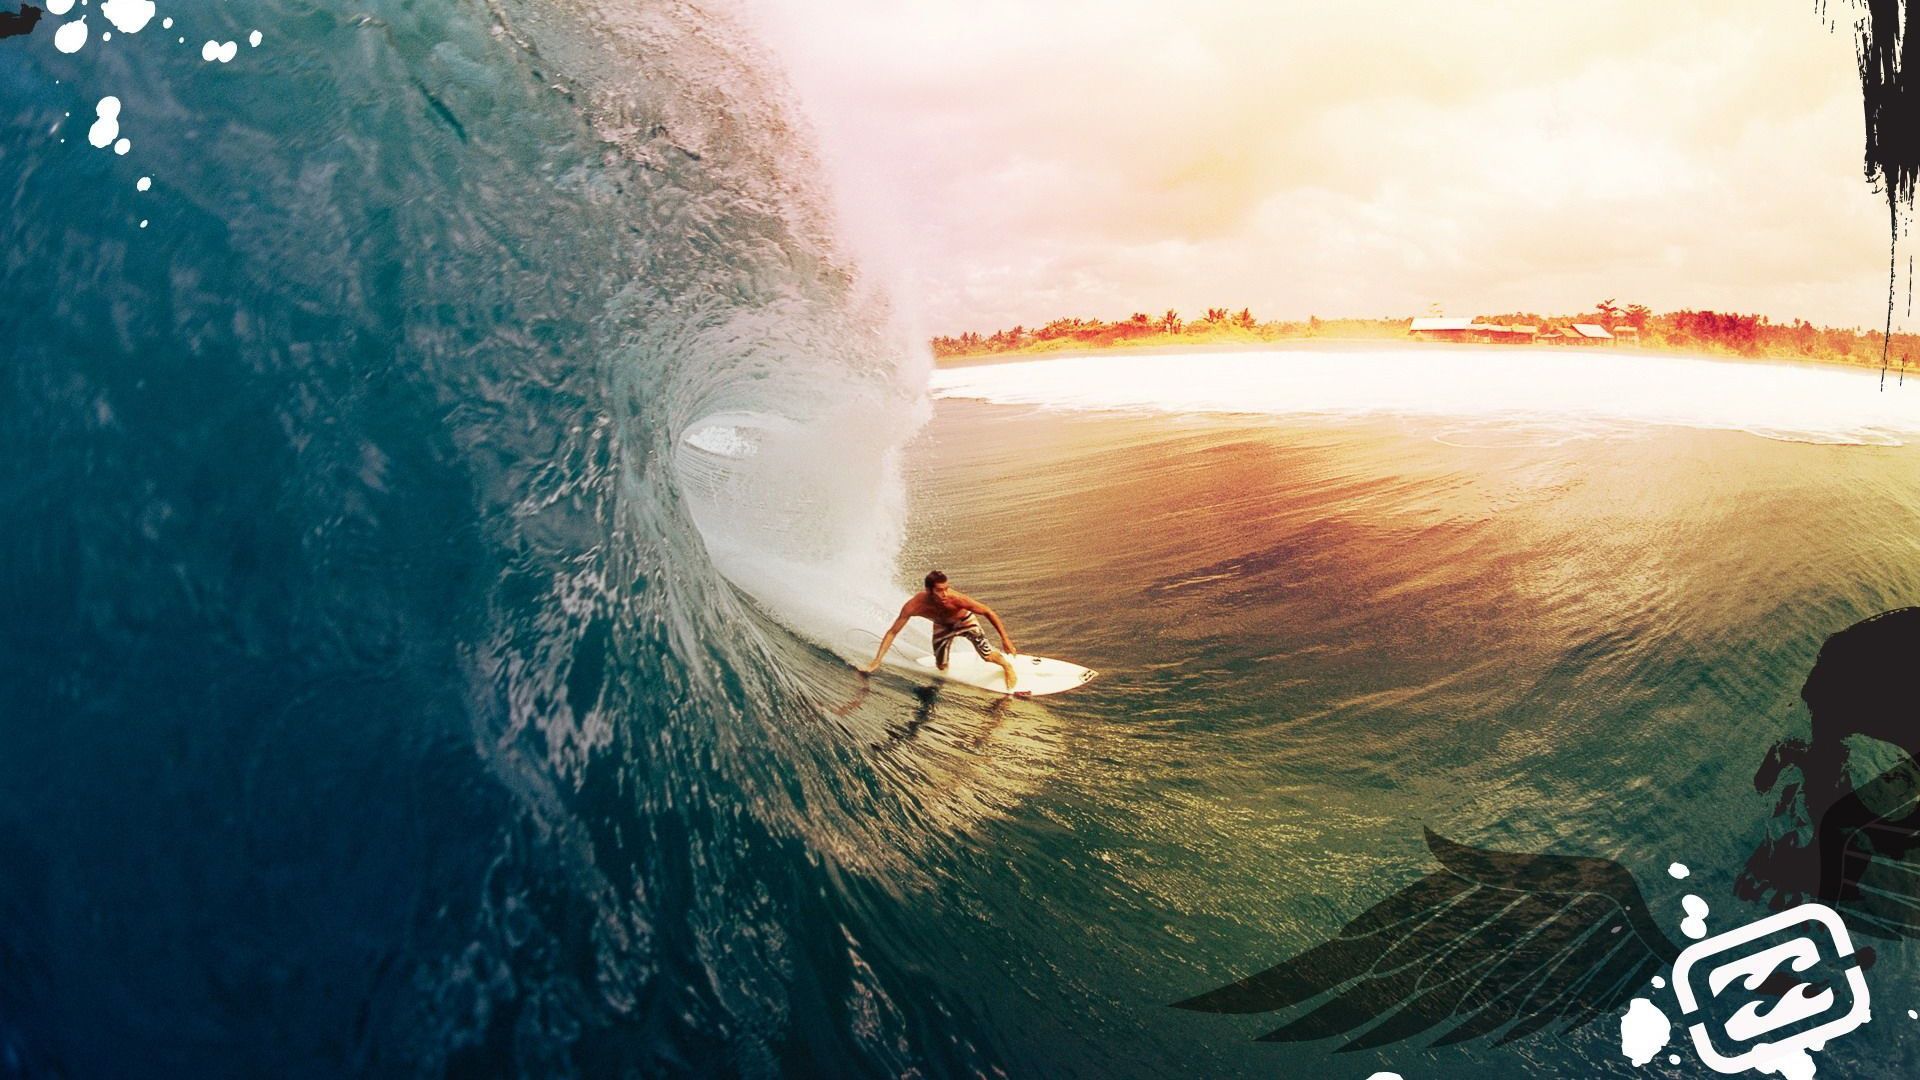 Surf Surfing Desktop Wallpaper, Surfing Picture, New Background